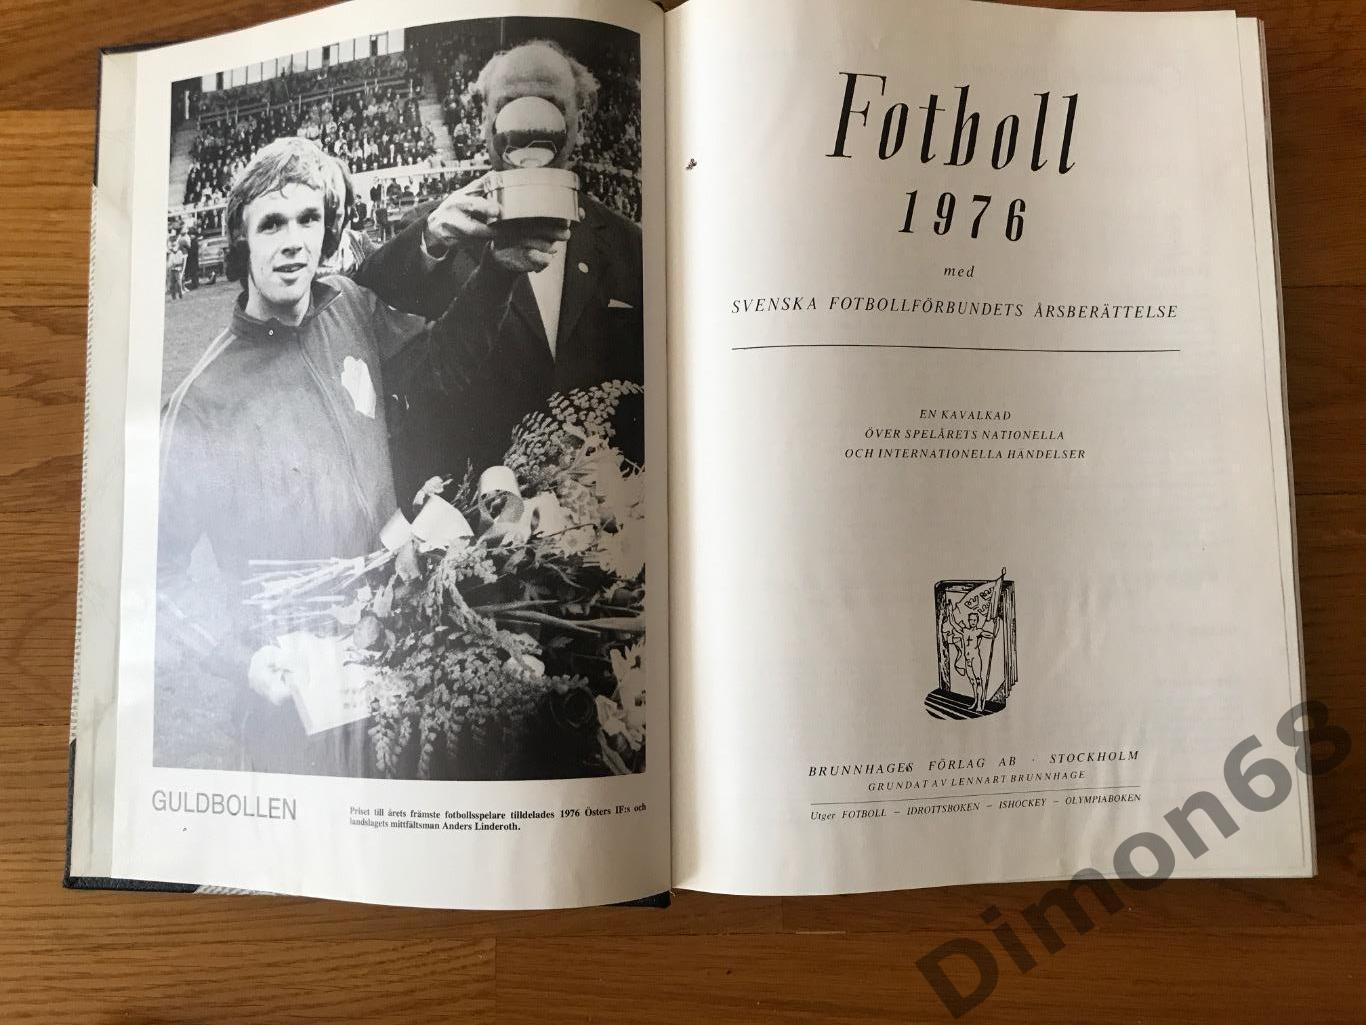 Энциклопедия шведского футбола, фото команд всех шведских региональных лиг 1